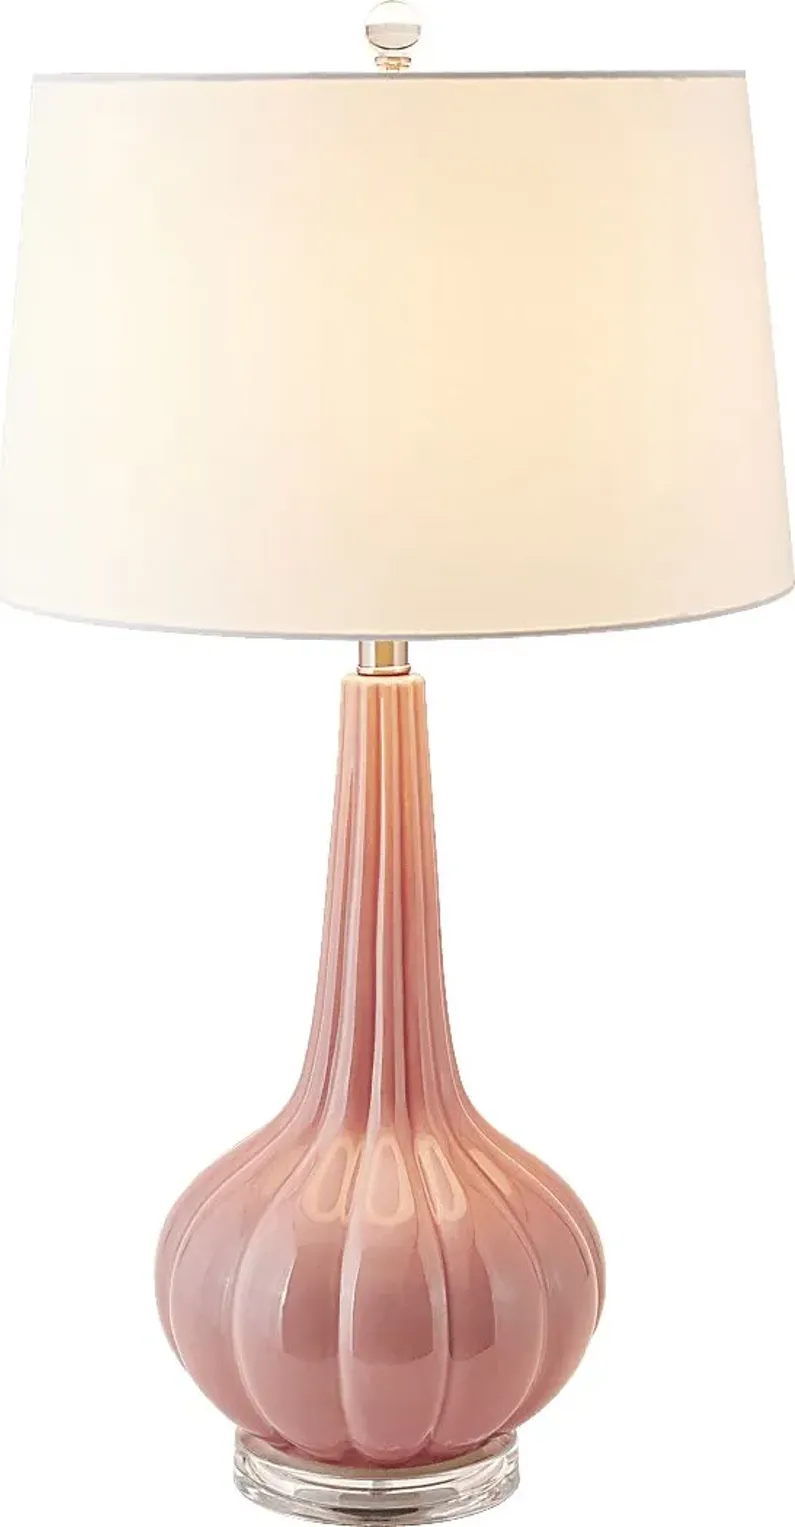 Stilton Shores Pink Lamp